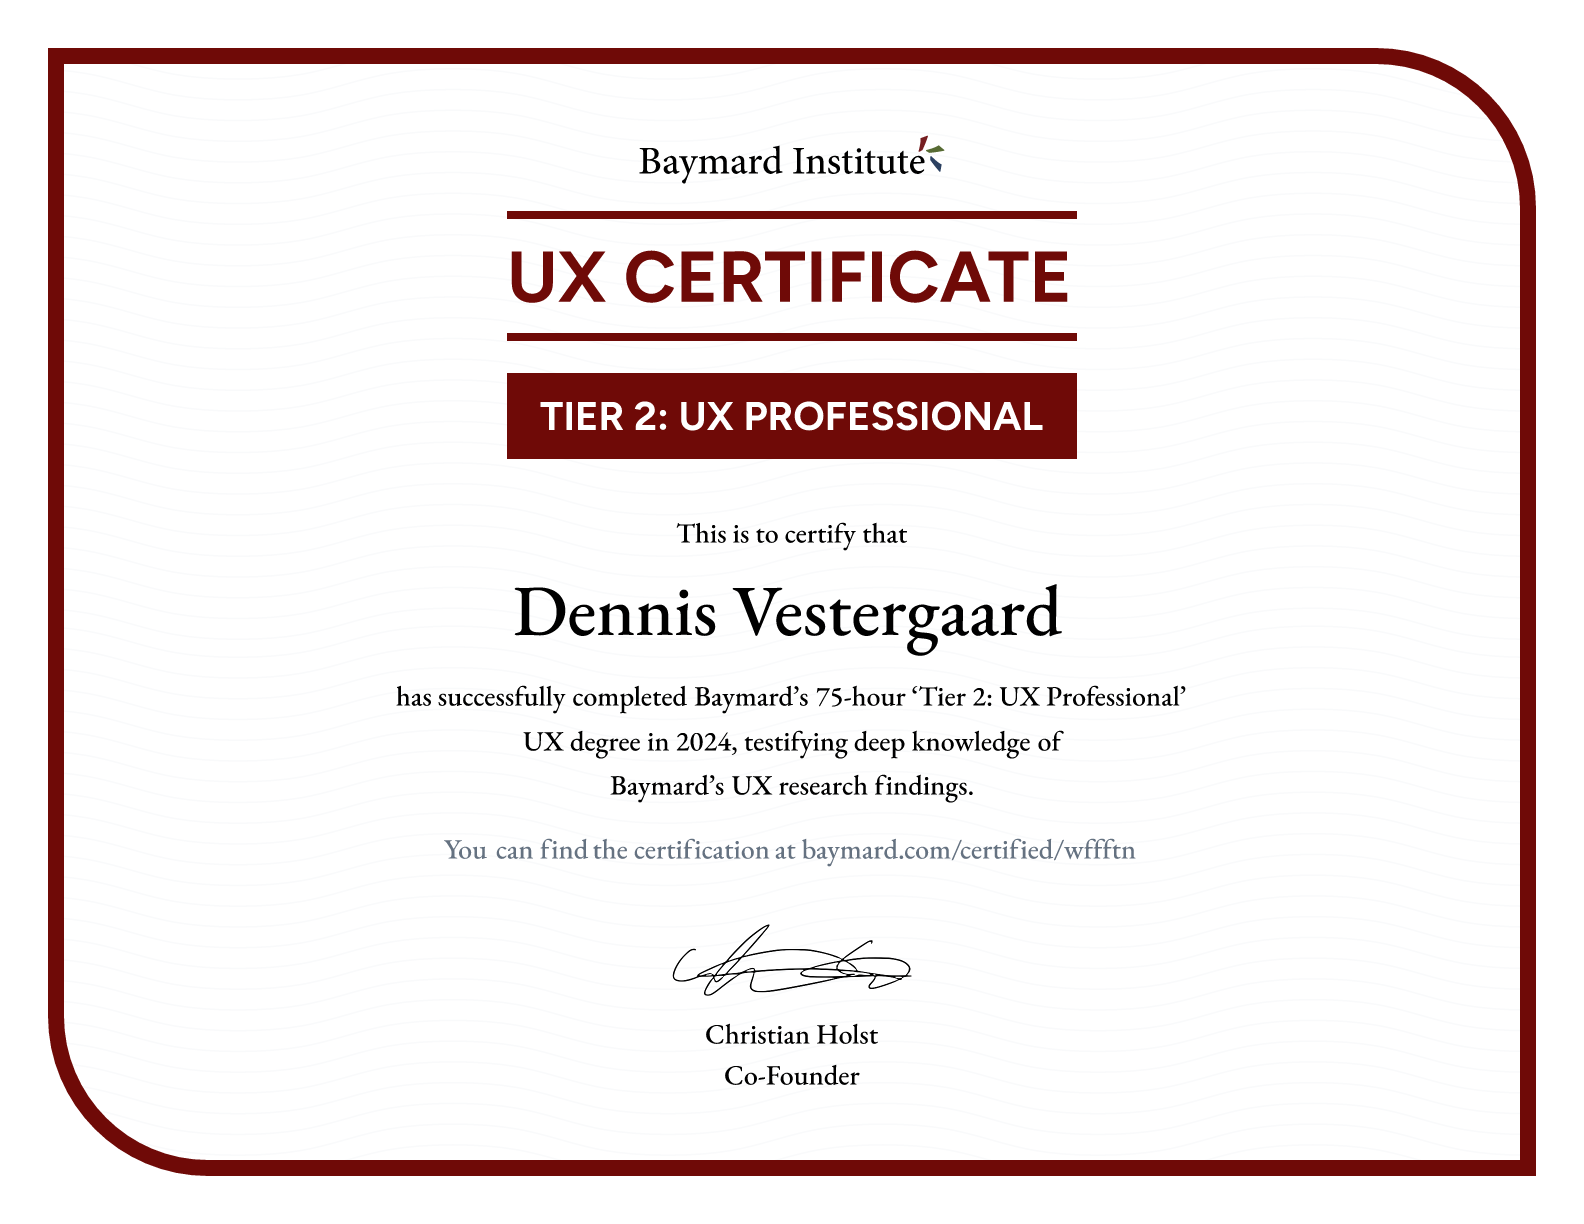 Dennis Vestergaard’s certificate